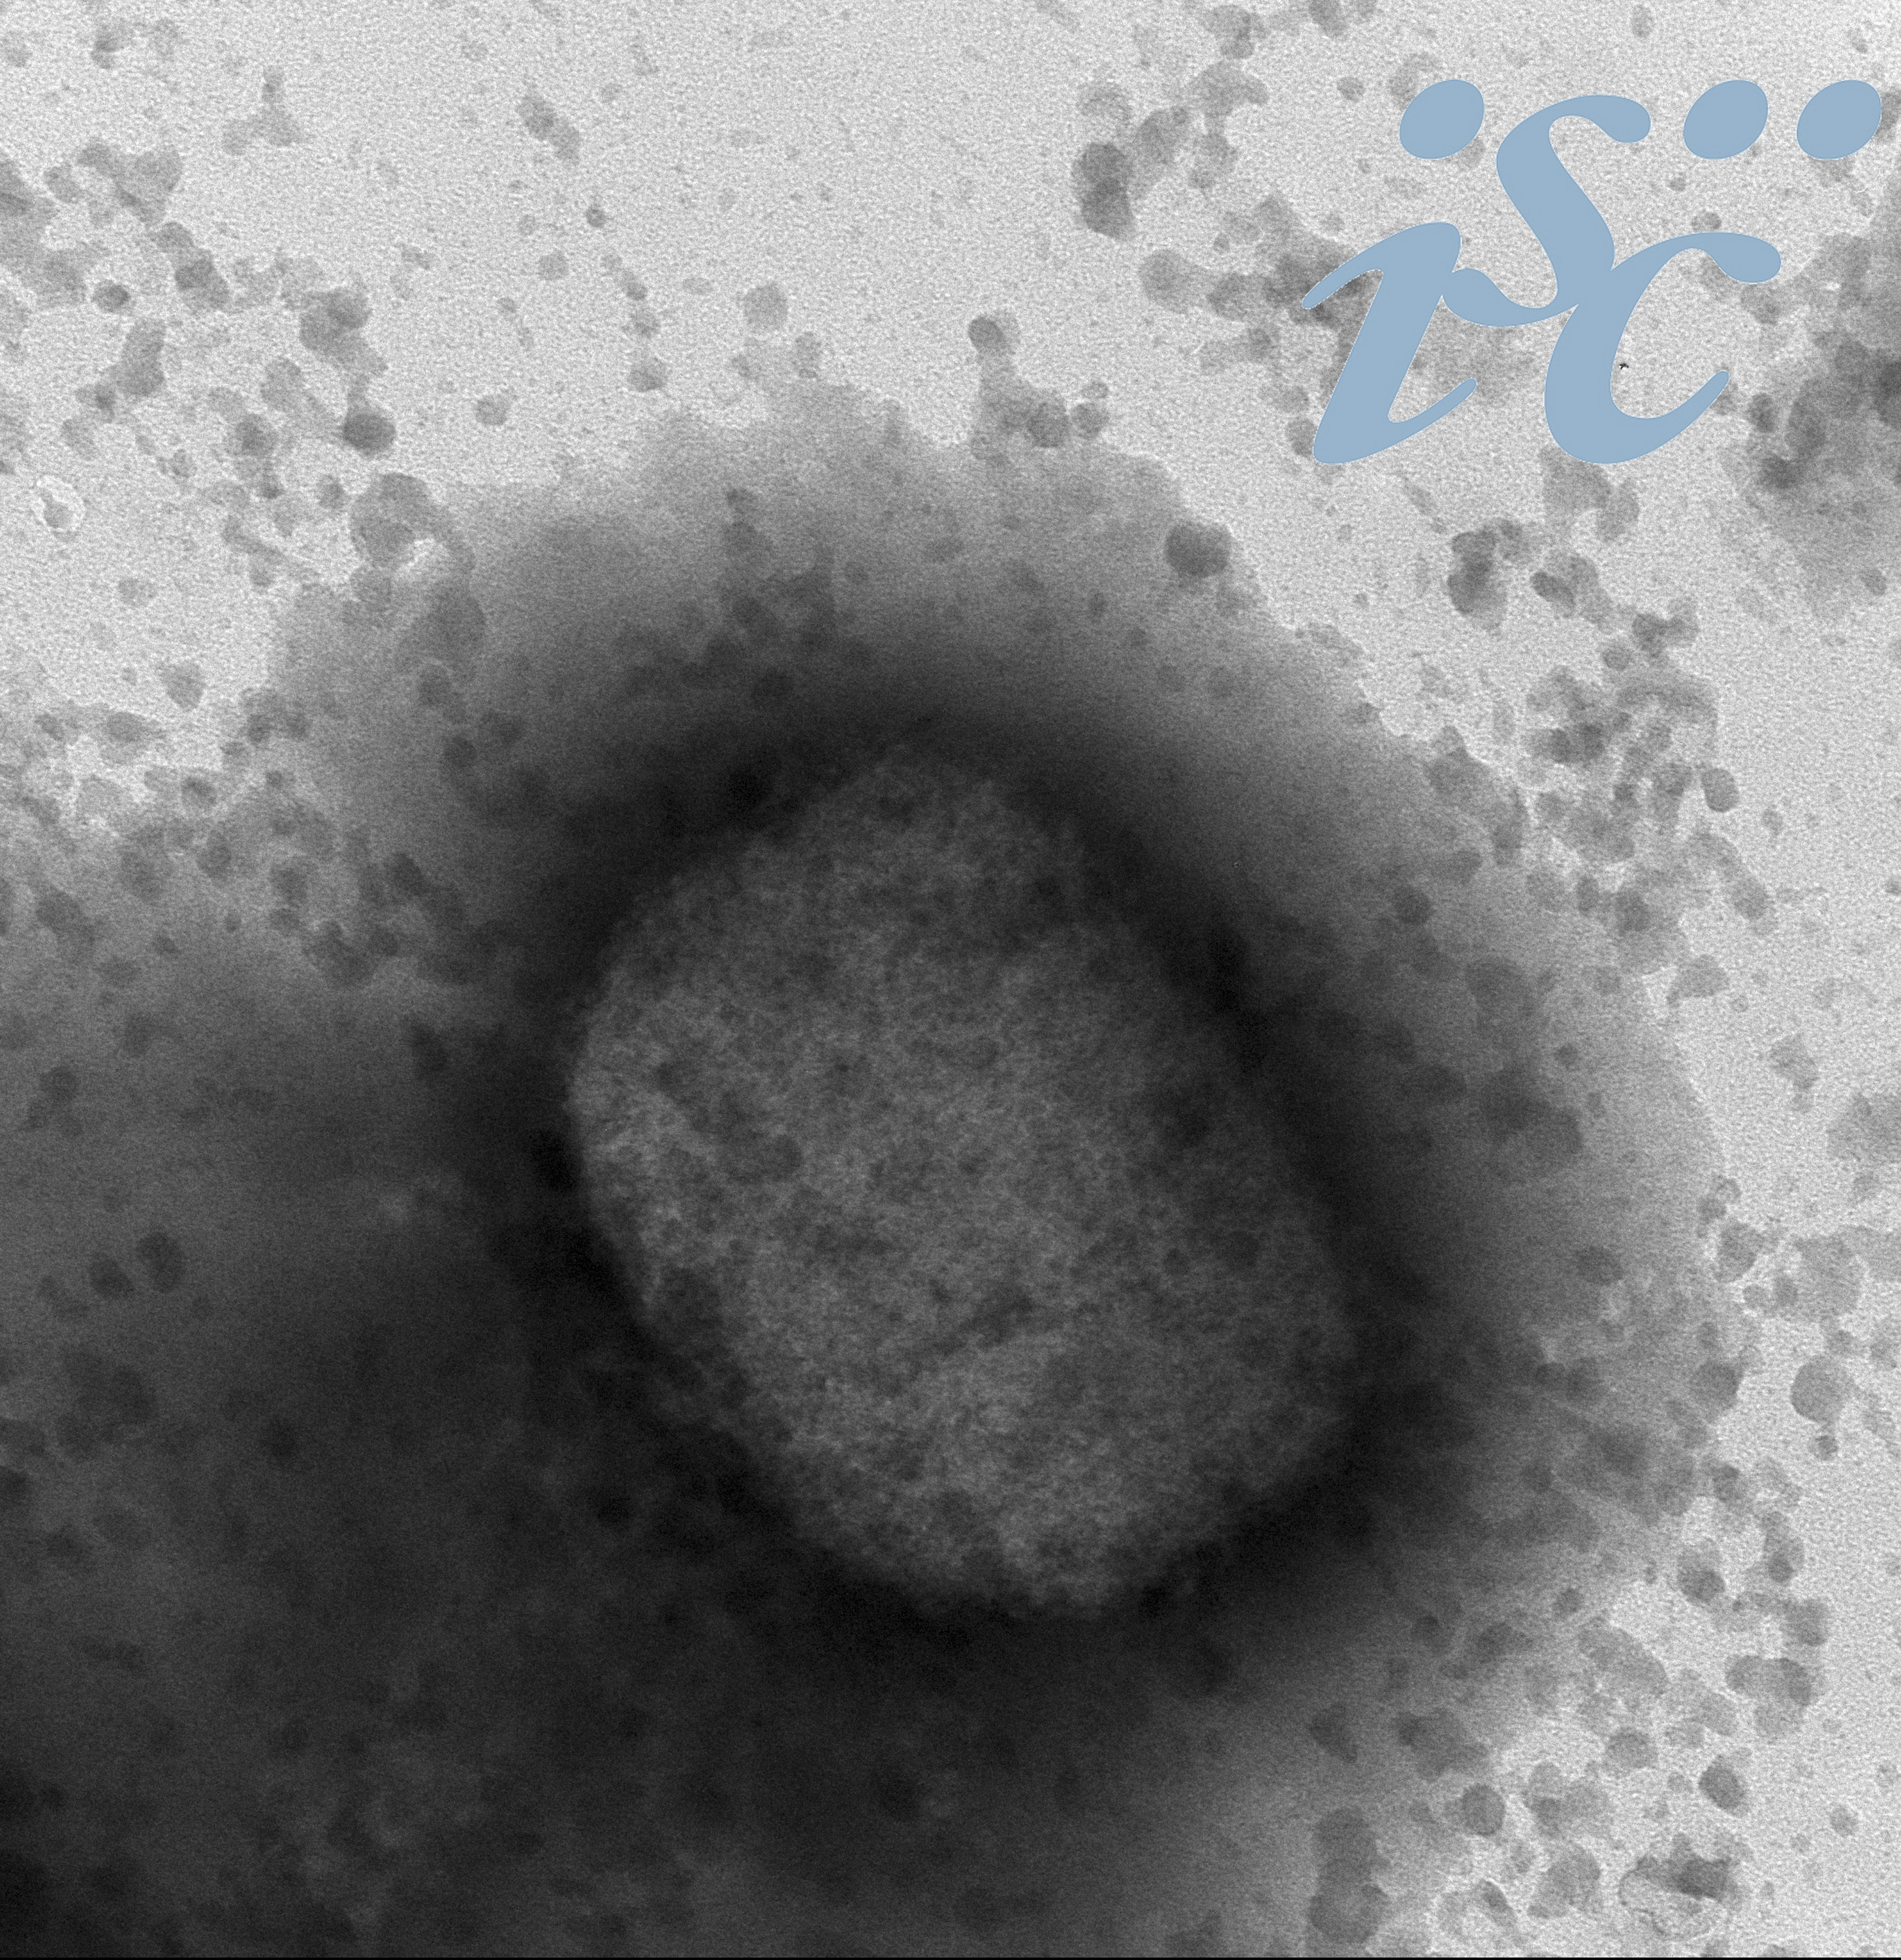 Imagen del virus de la viruela del mono observado a través de microscopía electrónica, facilitada por el Instituto de Salud Carlos III (ISCIII).